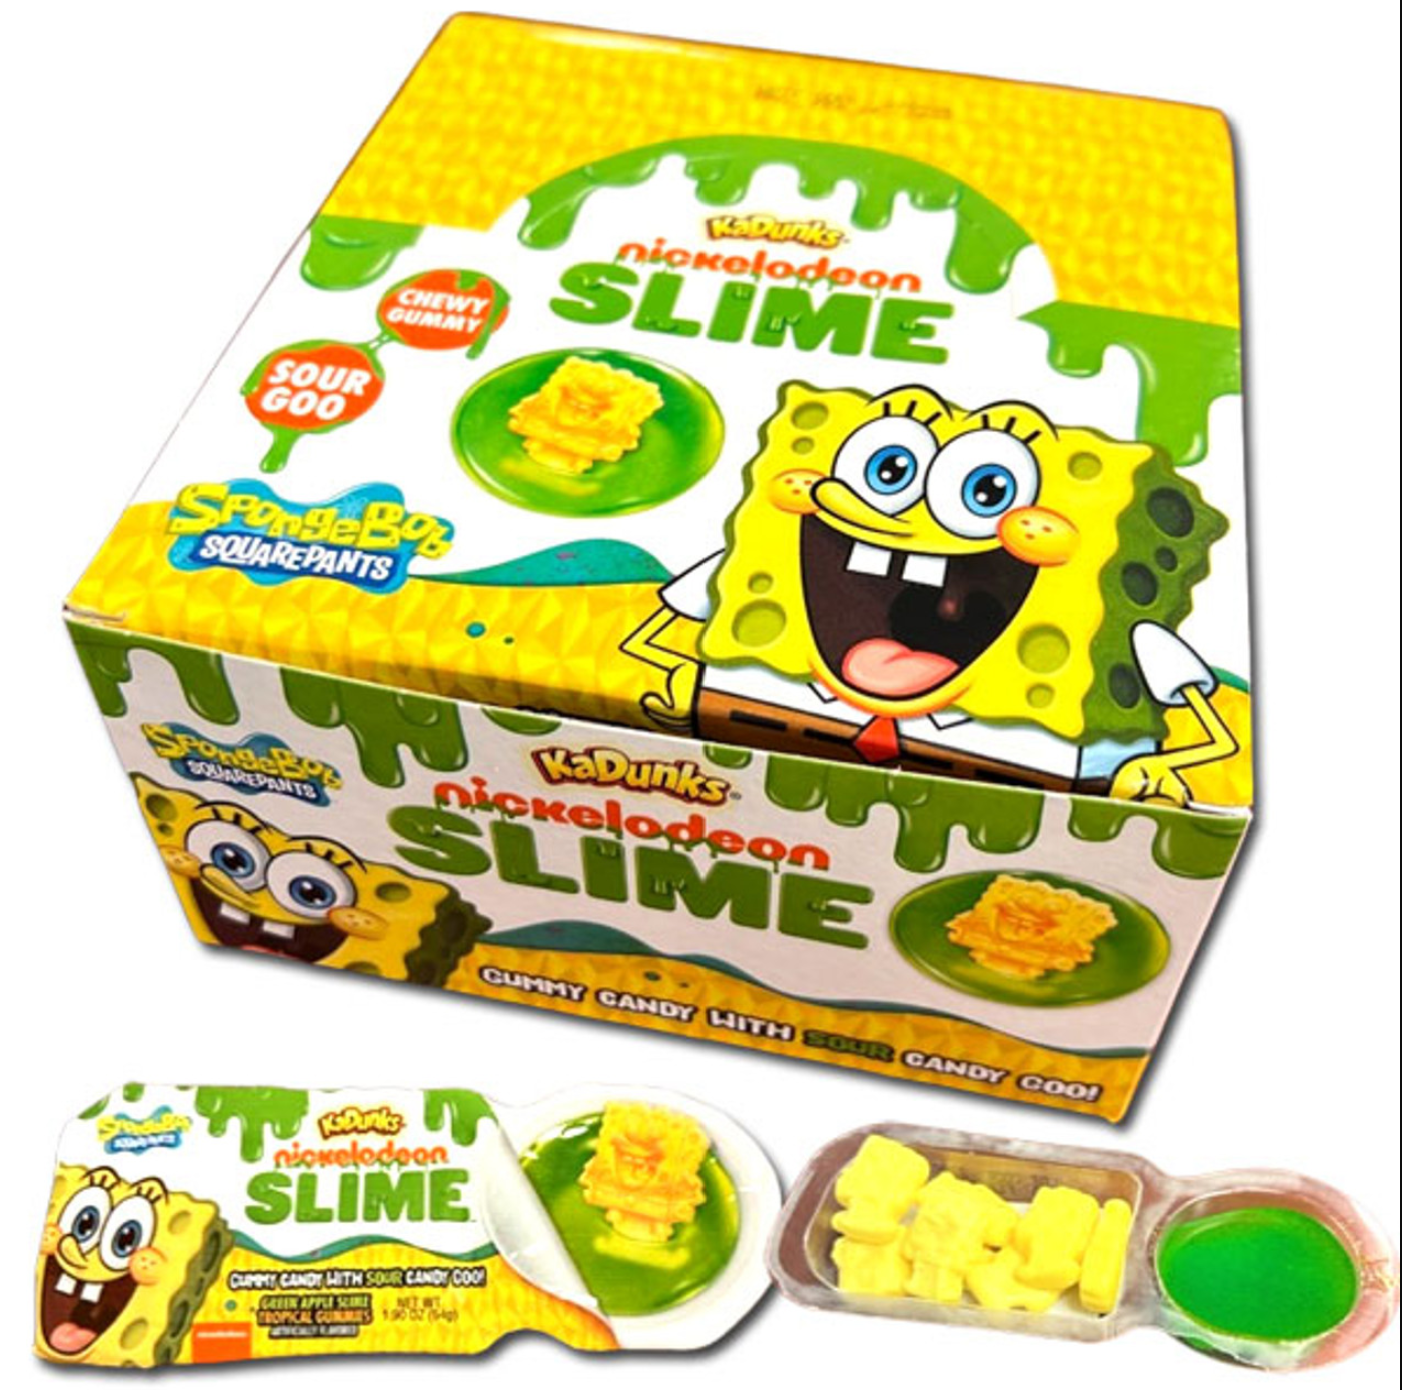 KaDunks SpongeBob Slime